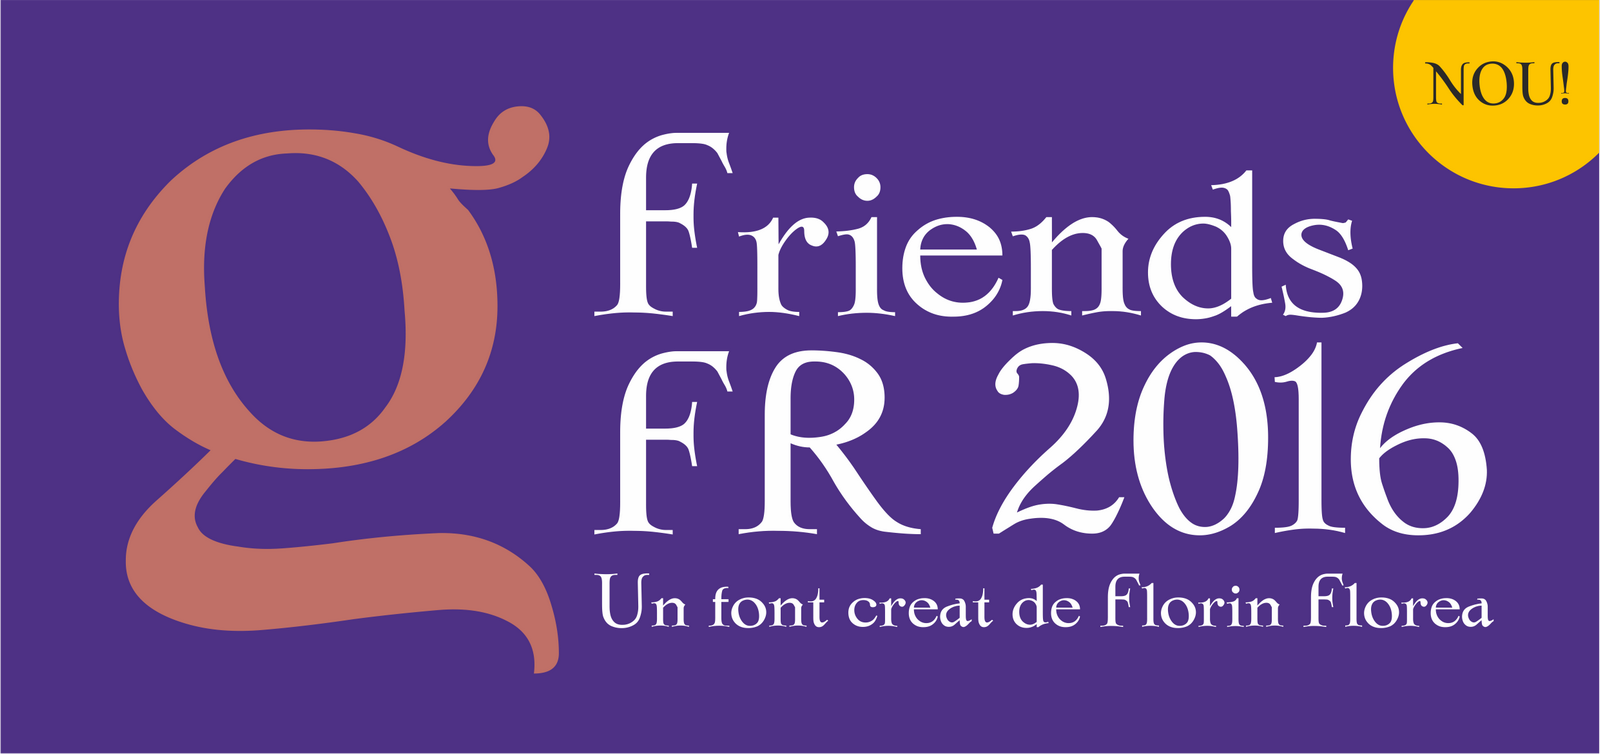 Friends FR 2016